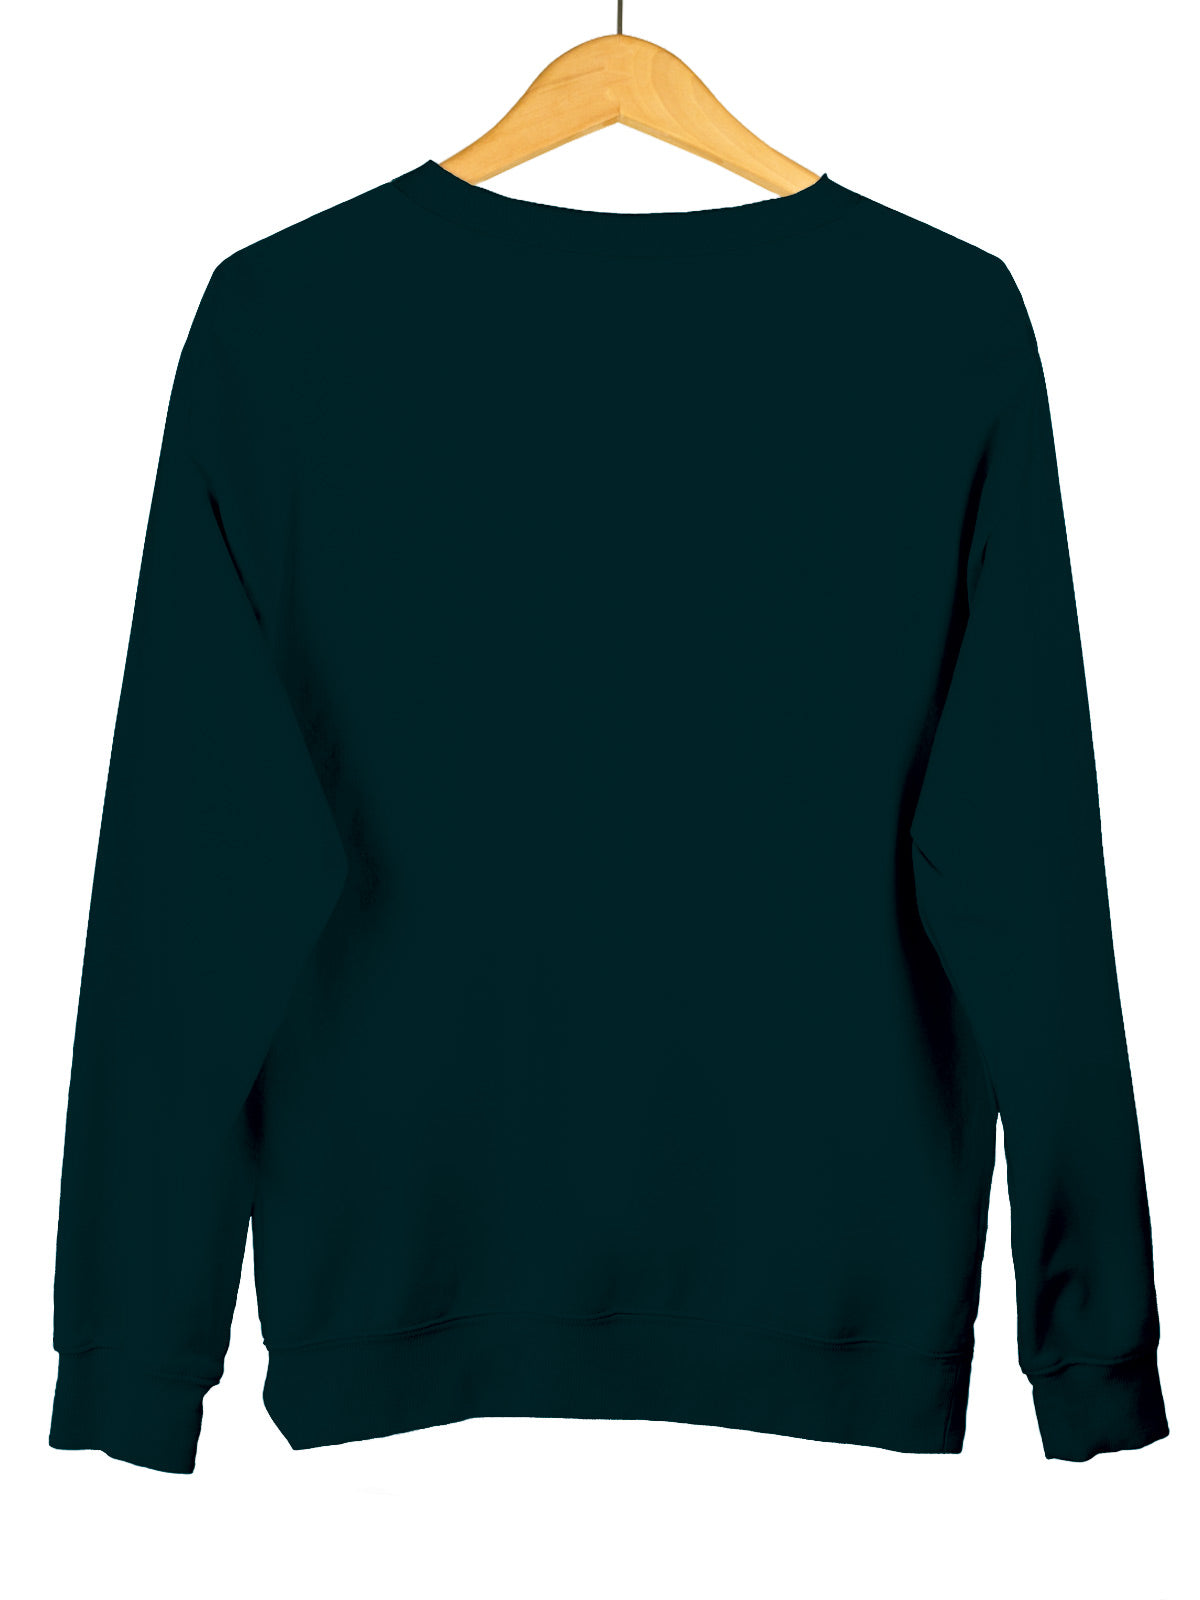 Teal Blue | Unisex Plain Sweatshirt